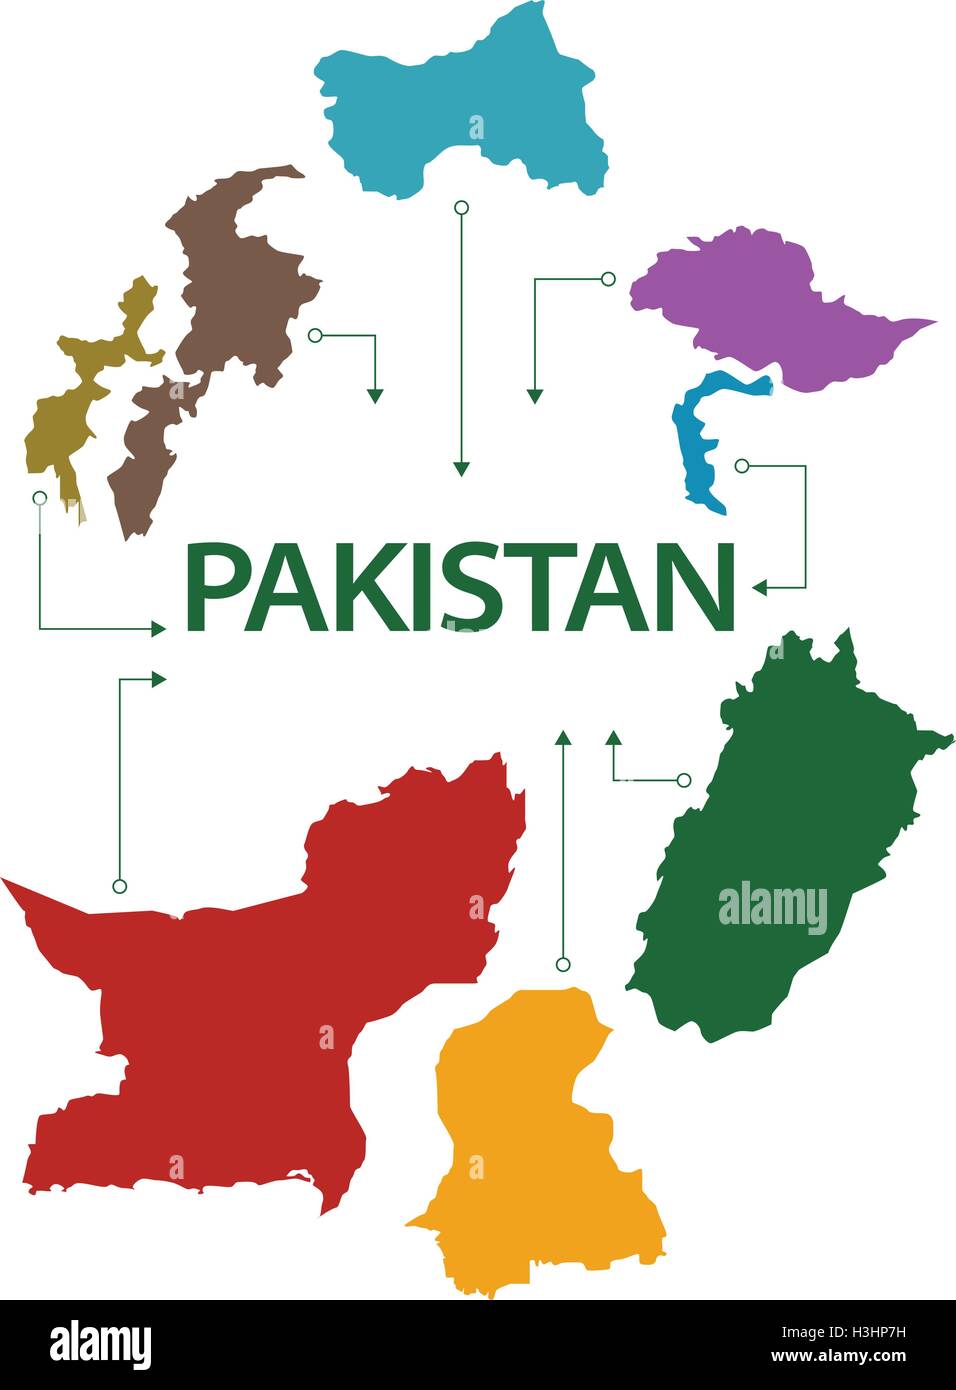 Pakistan carte avec tous les états et provinces Illustration de Vecteur